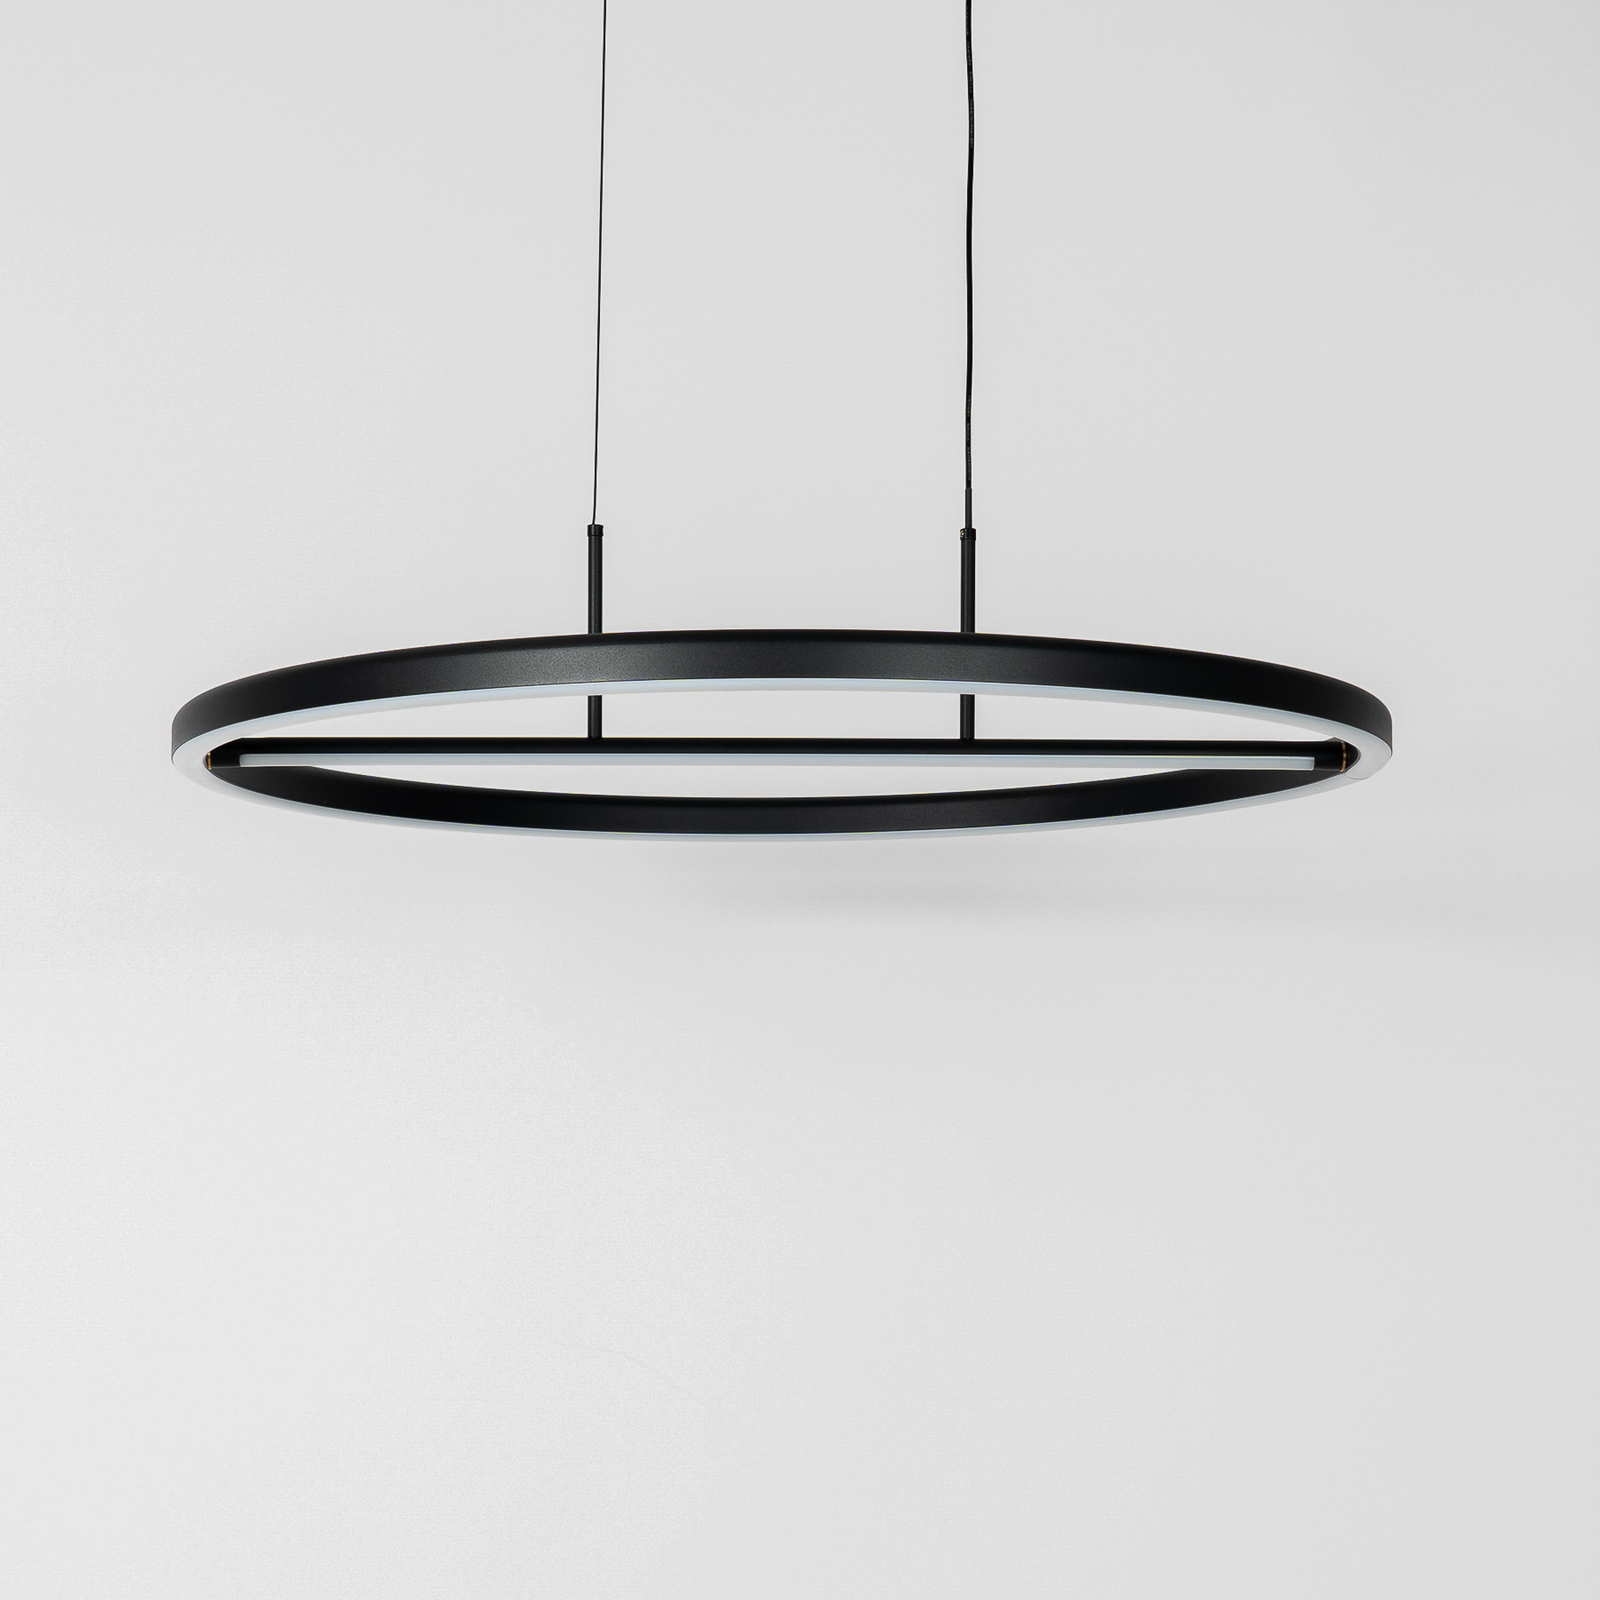 Lucande Virvera LED-Hängelampe, rund, schwarz